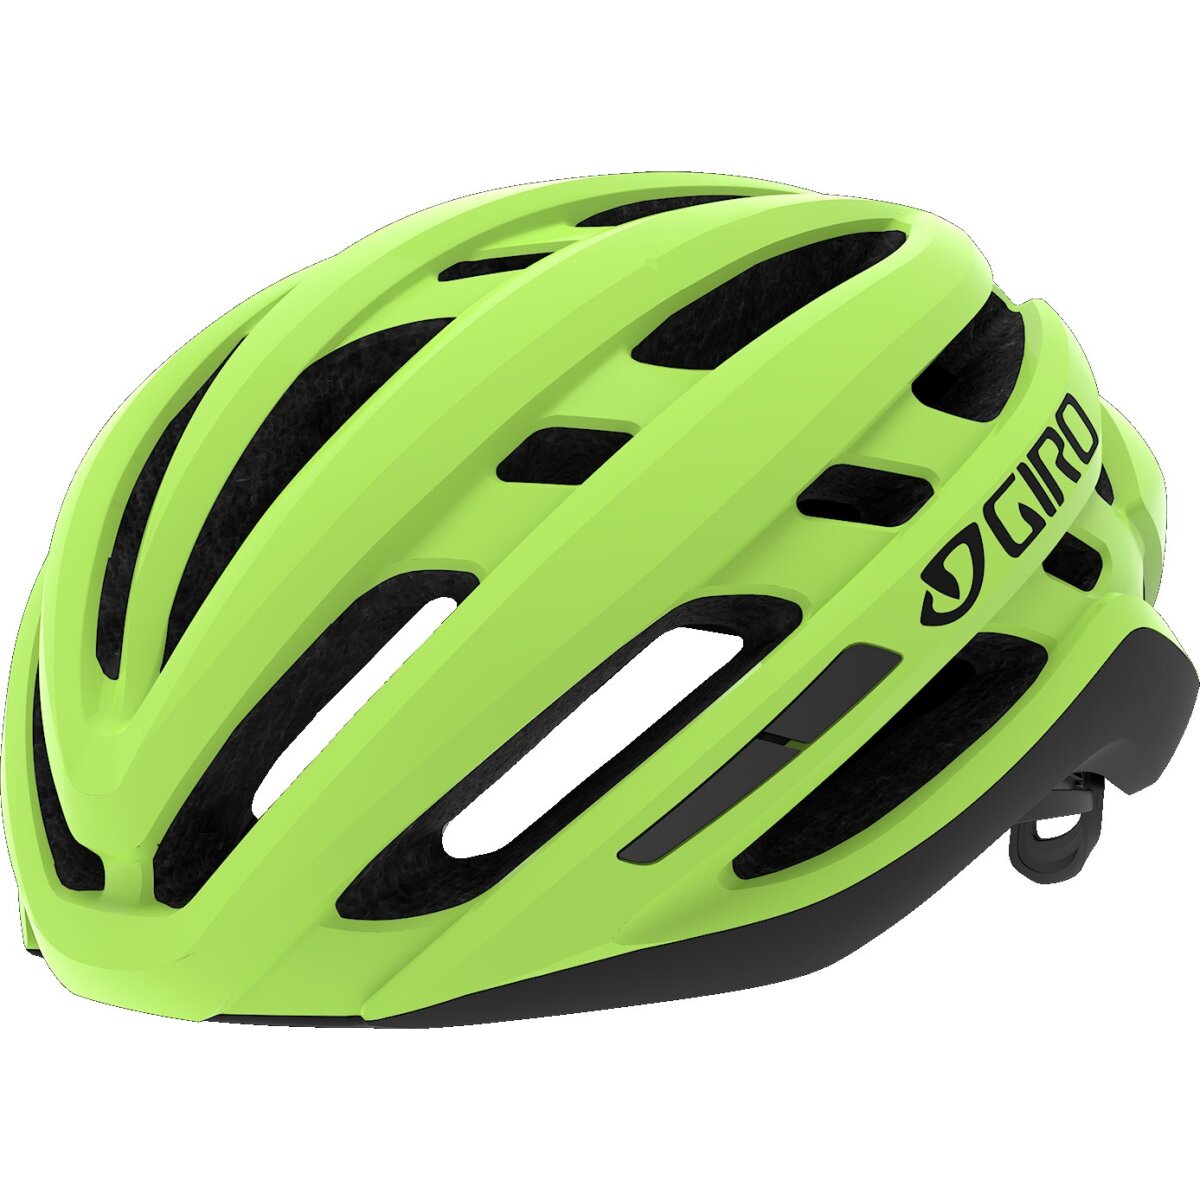 Велосипедный шлем Giro Agilis highlight yellow 7112722SMP